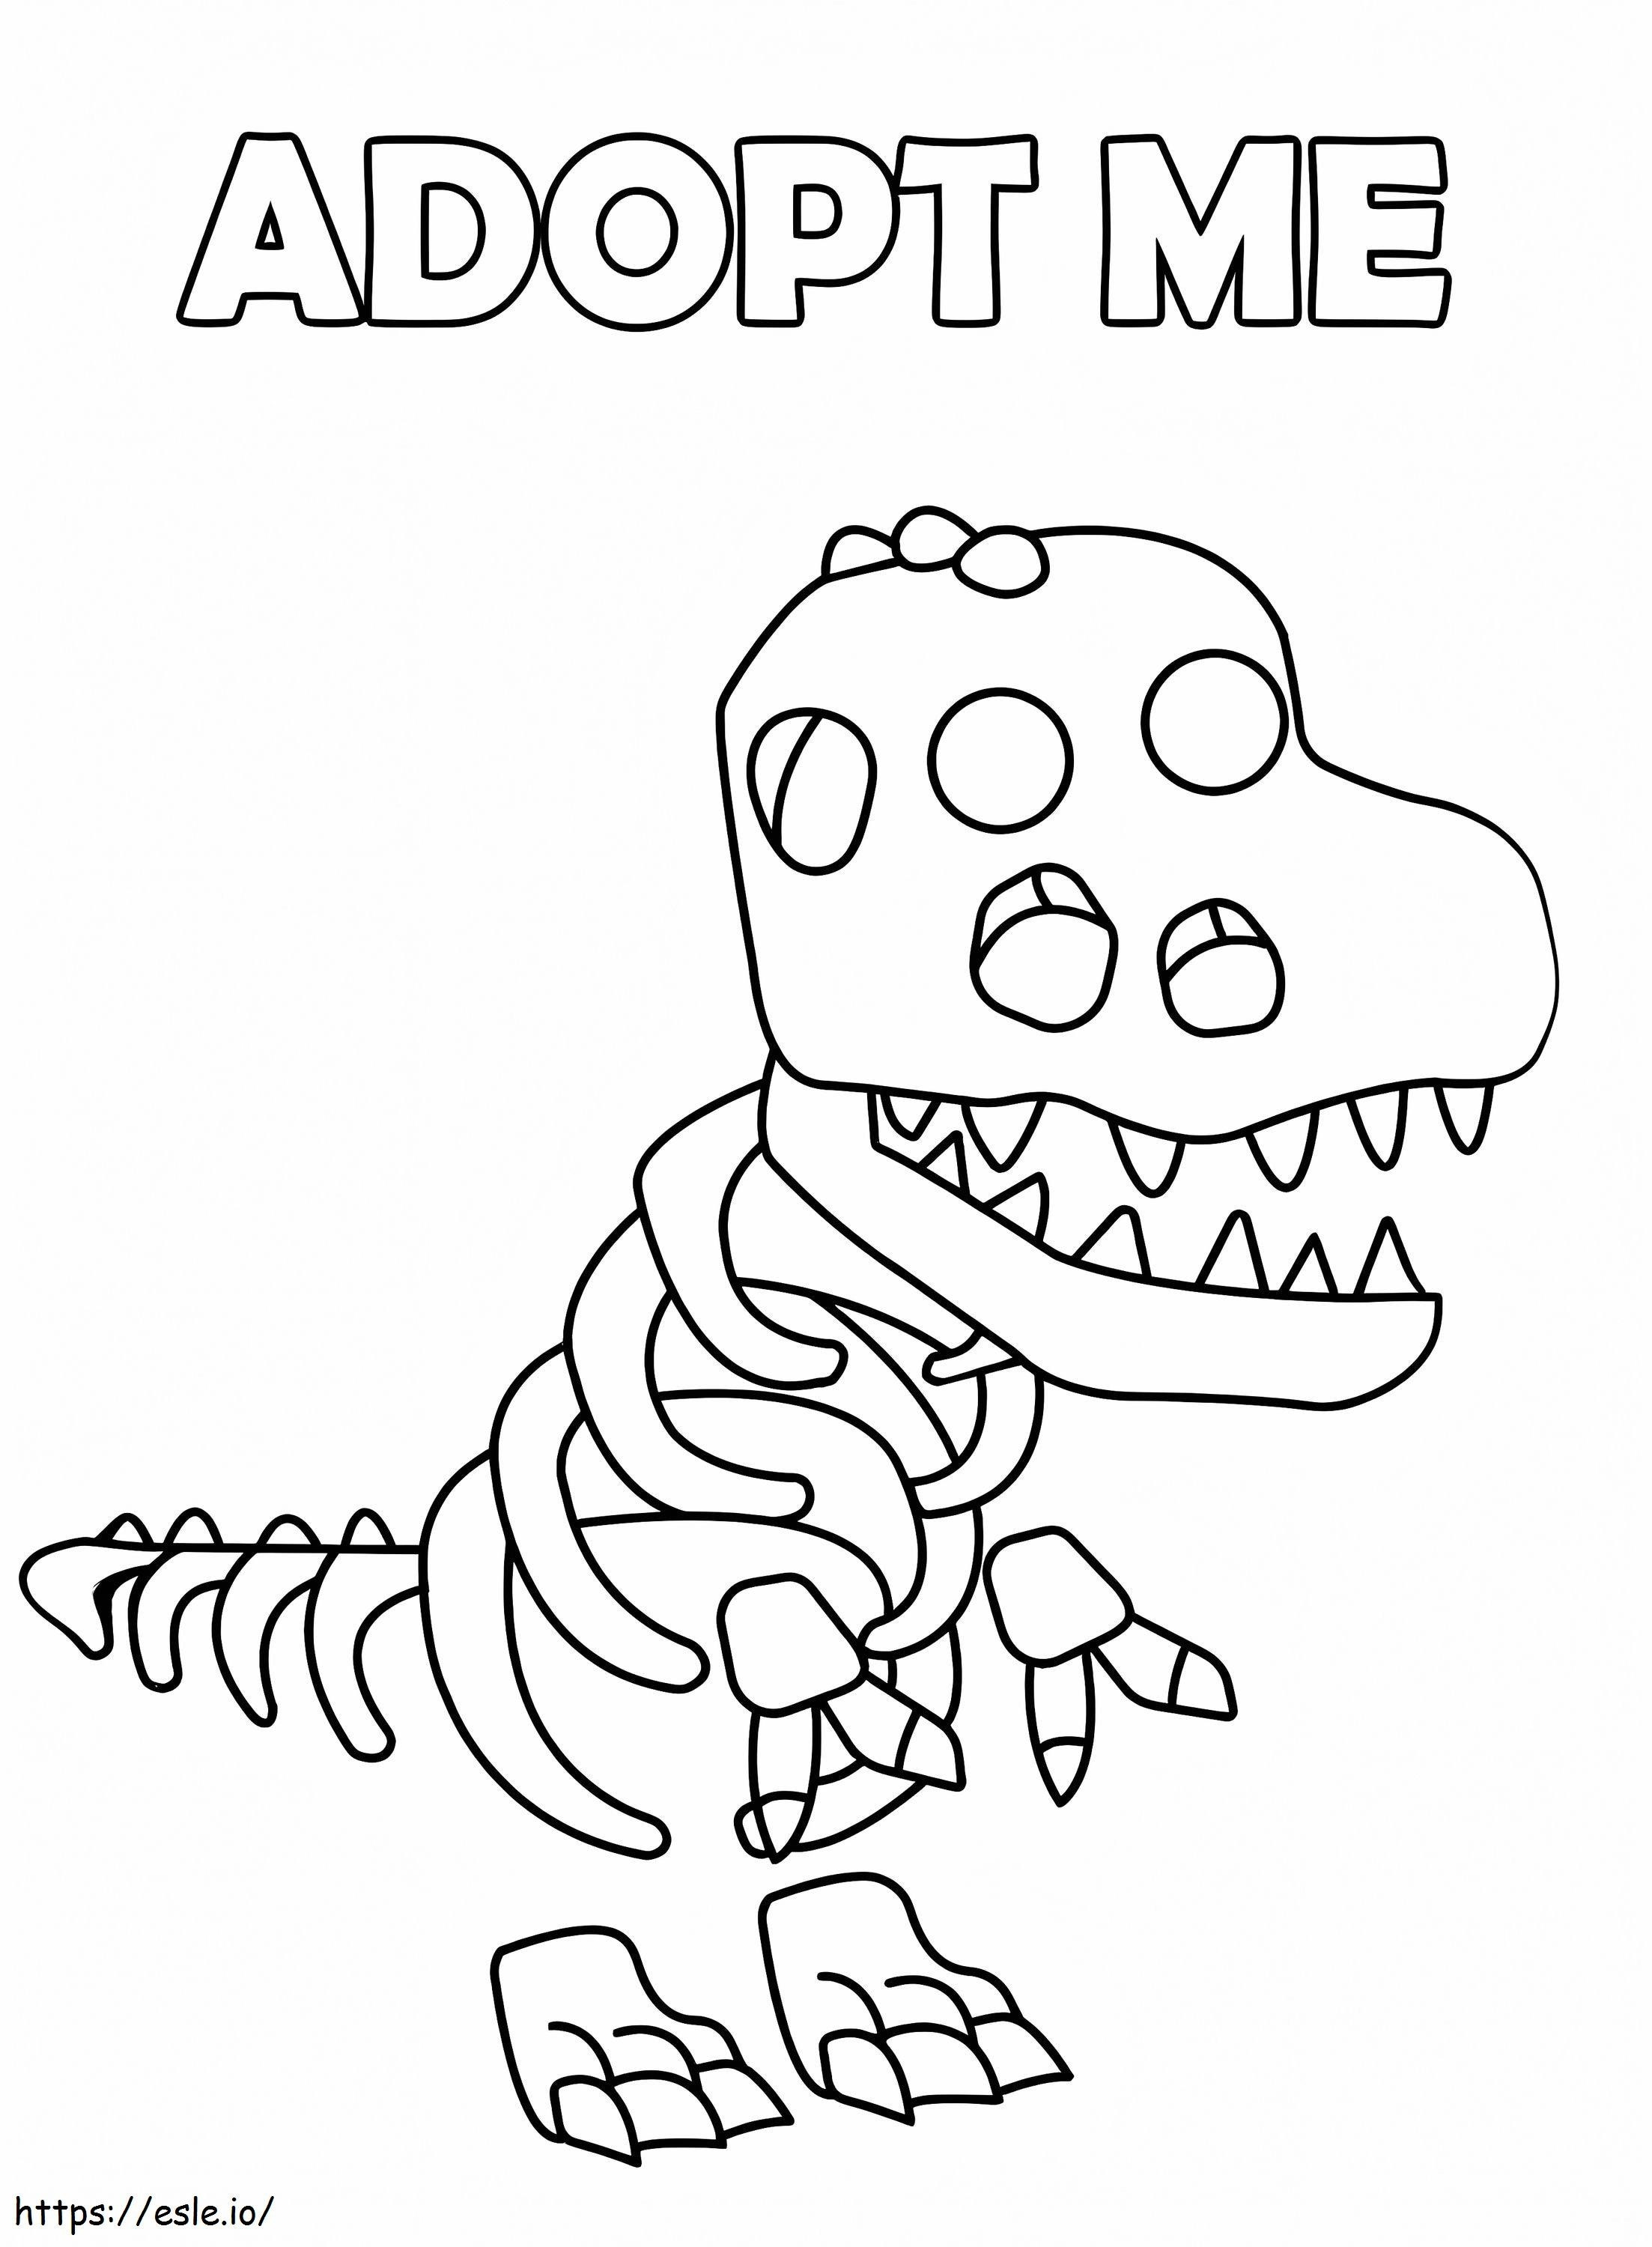 Esqueleto Rex Adoptame para colorear